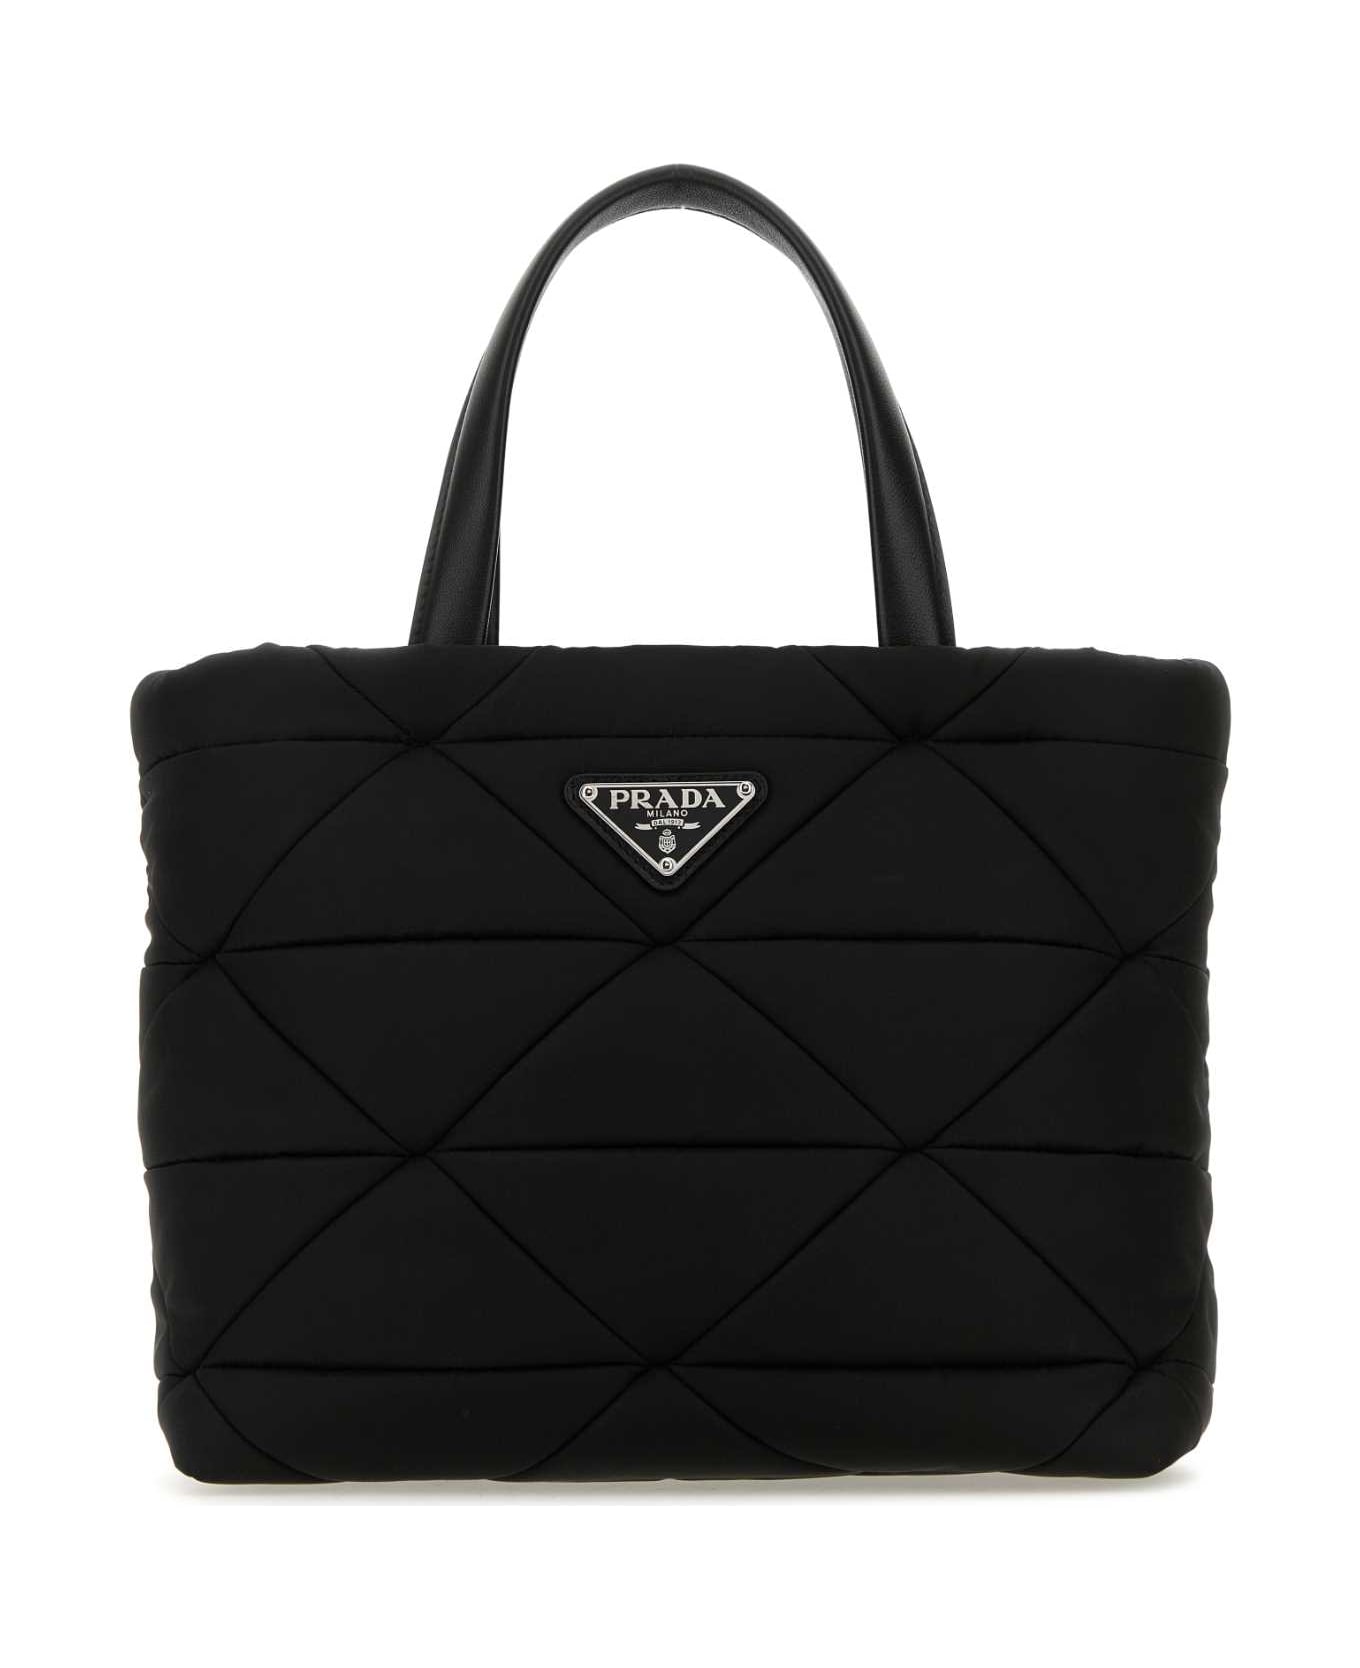 Prada Black Re-nylon Handbag - Black